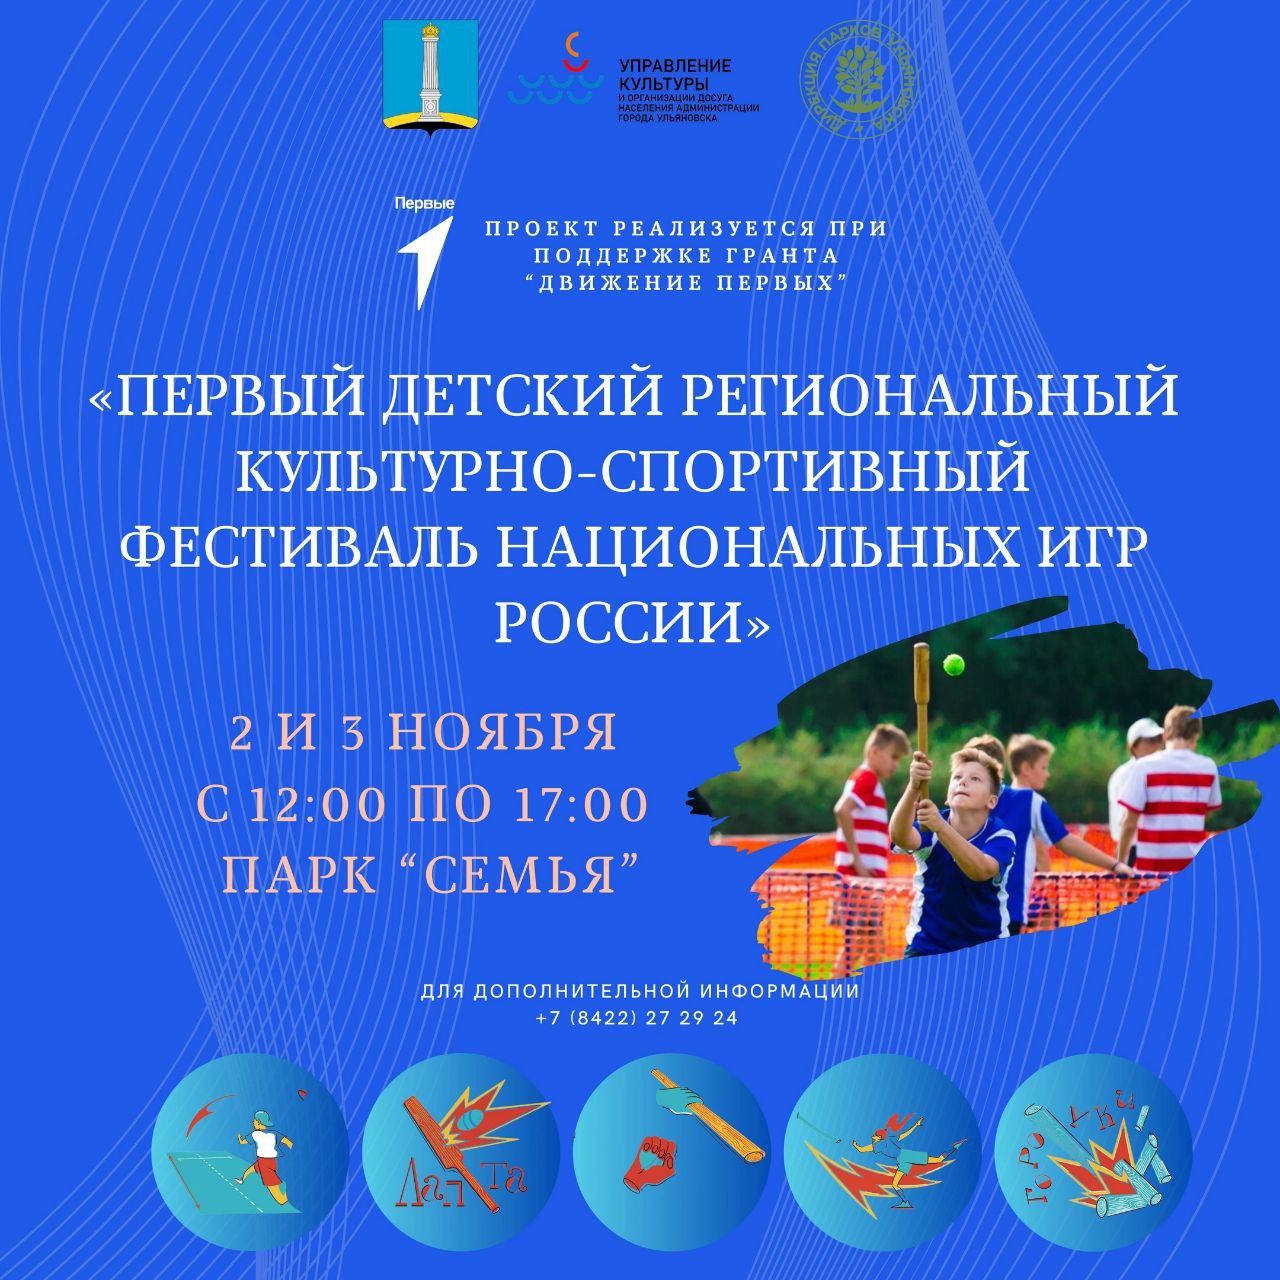 Первый детский региональный фестиваль национальных игр России откроется в Ульяновске 2 ноября.